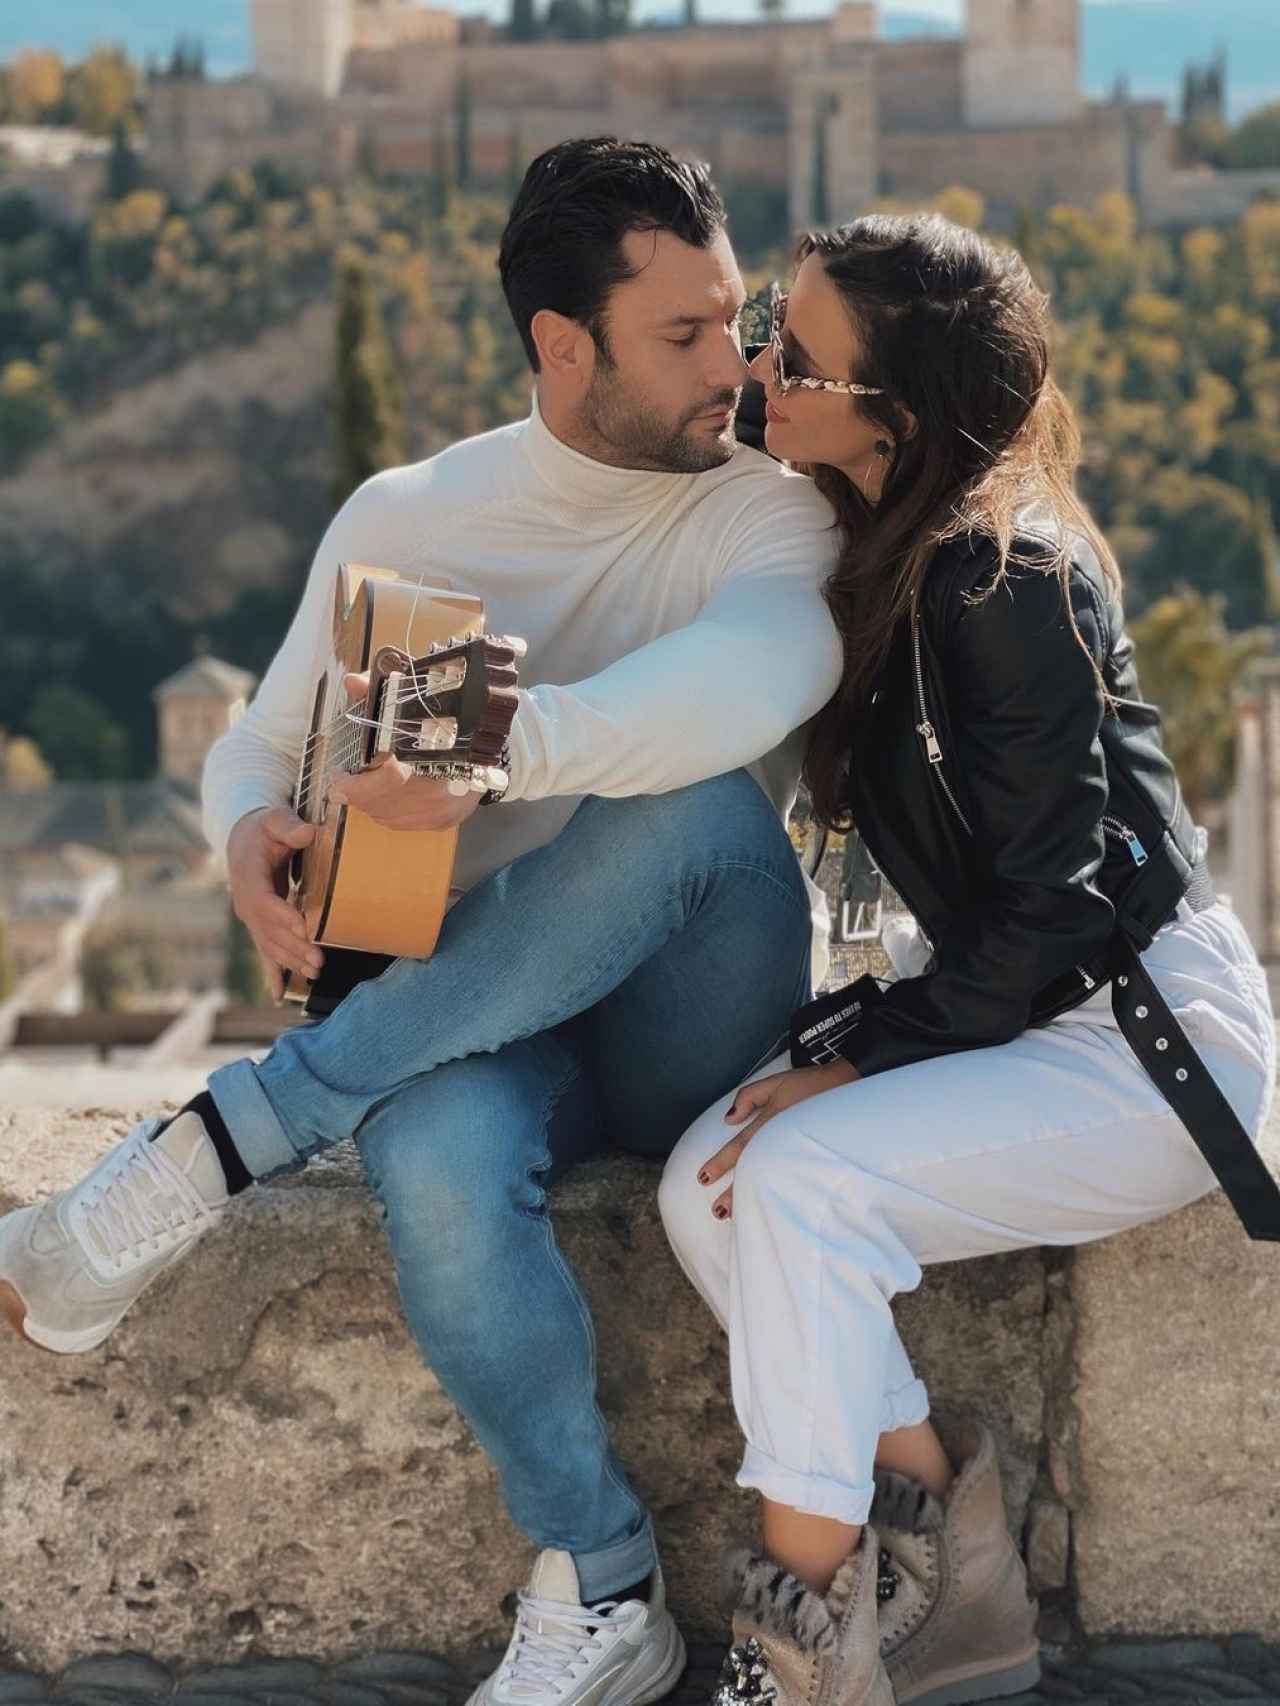 Jorge Pérez y Alicia Peña, en una romántica imagen tomada en La Alhambra de Granada.